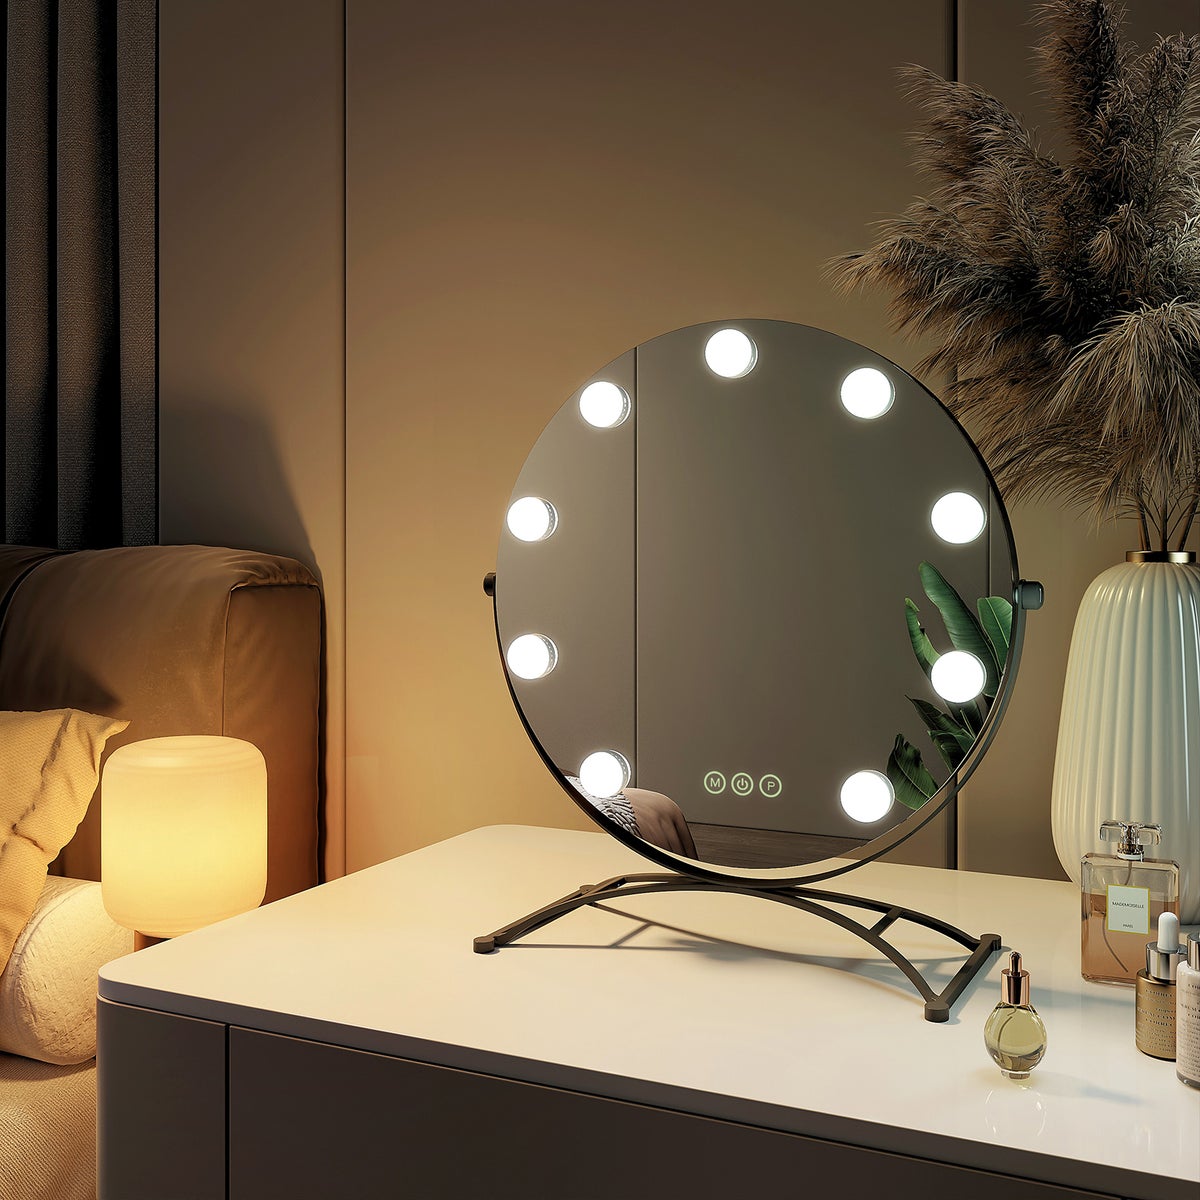 EMKE Runder Schminkspiegel Hollywood Spiegel mit Beleuchtung LED Tischspiegel, mit Touch, 3 Lichtfarben,9 Dimmbaren LED-Leuchtmitteln,7 x Vergrößerungs,Memory-Funktion, 360° Drehbar,Schwarz,40 cm